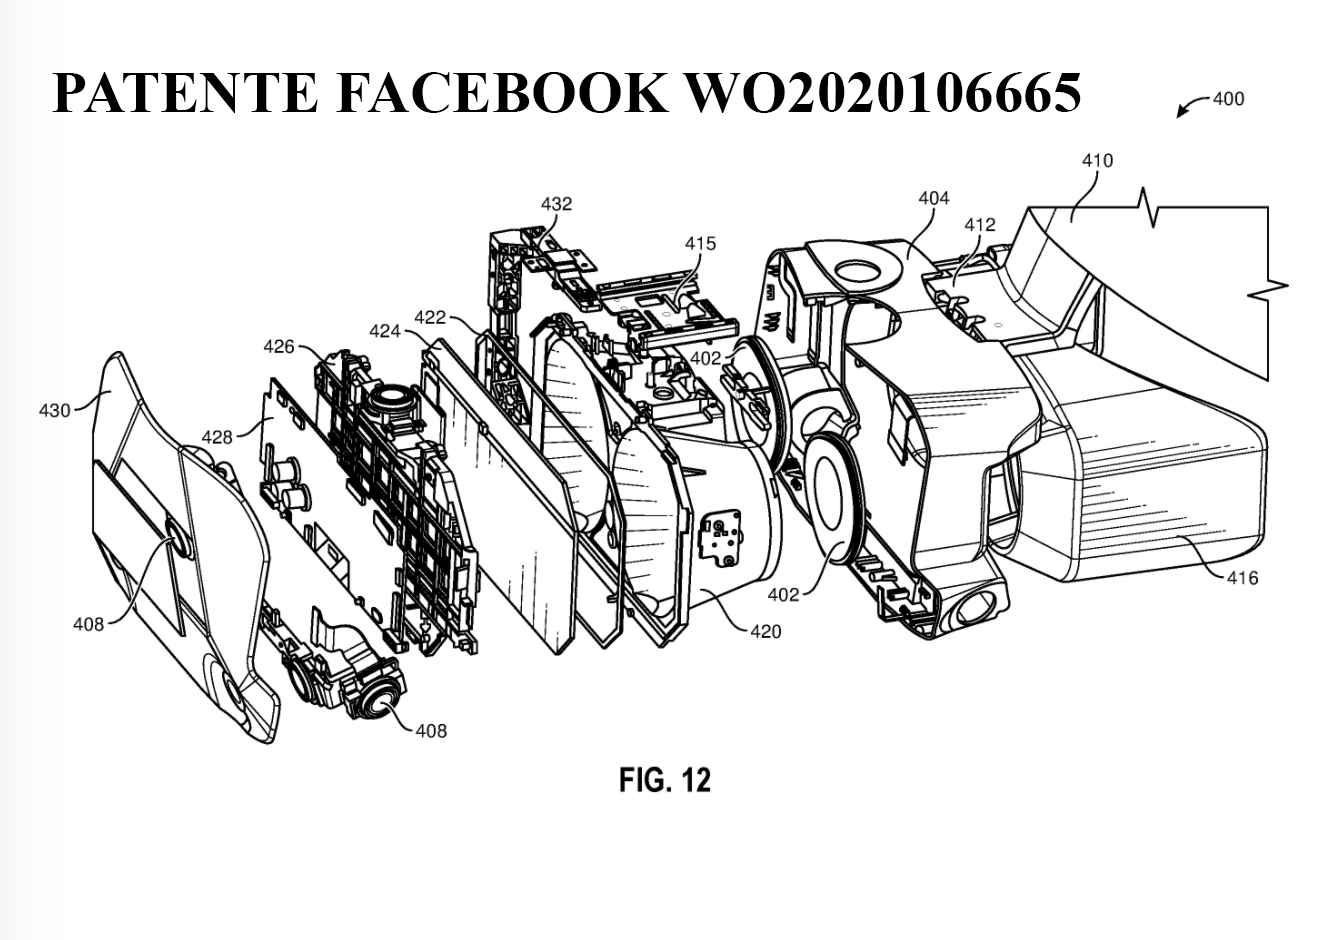 El extraño visor de la última patente de Facebook